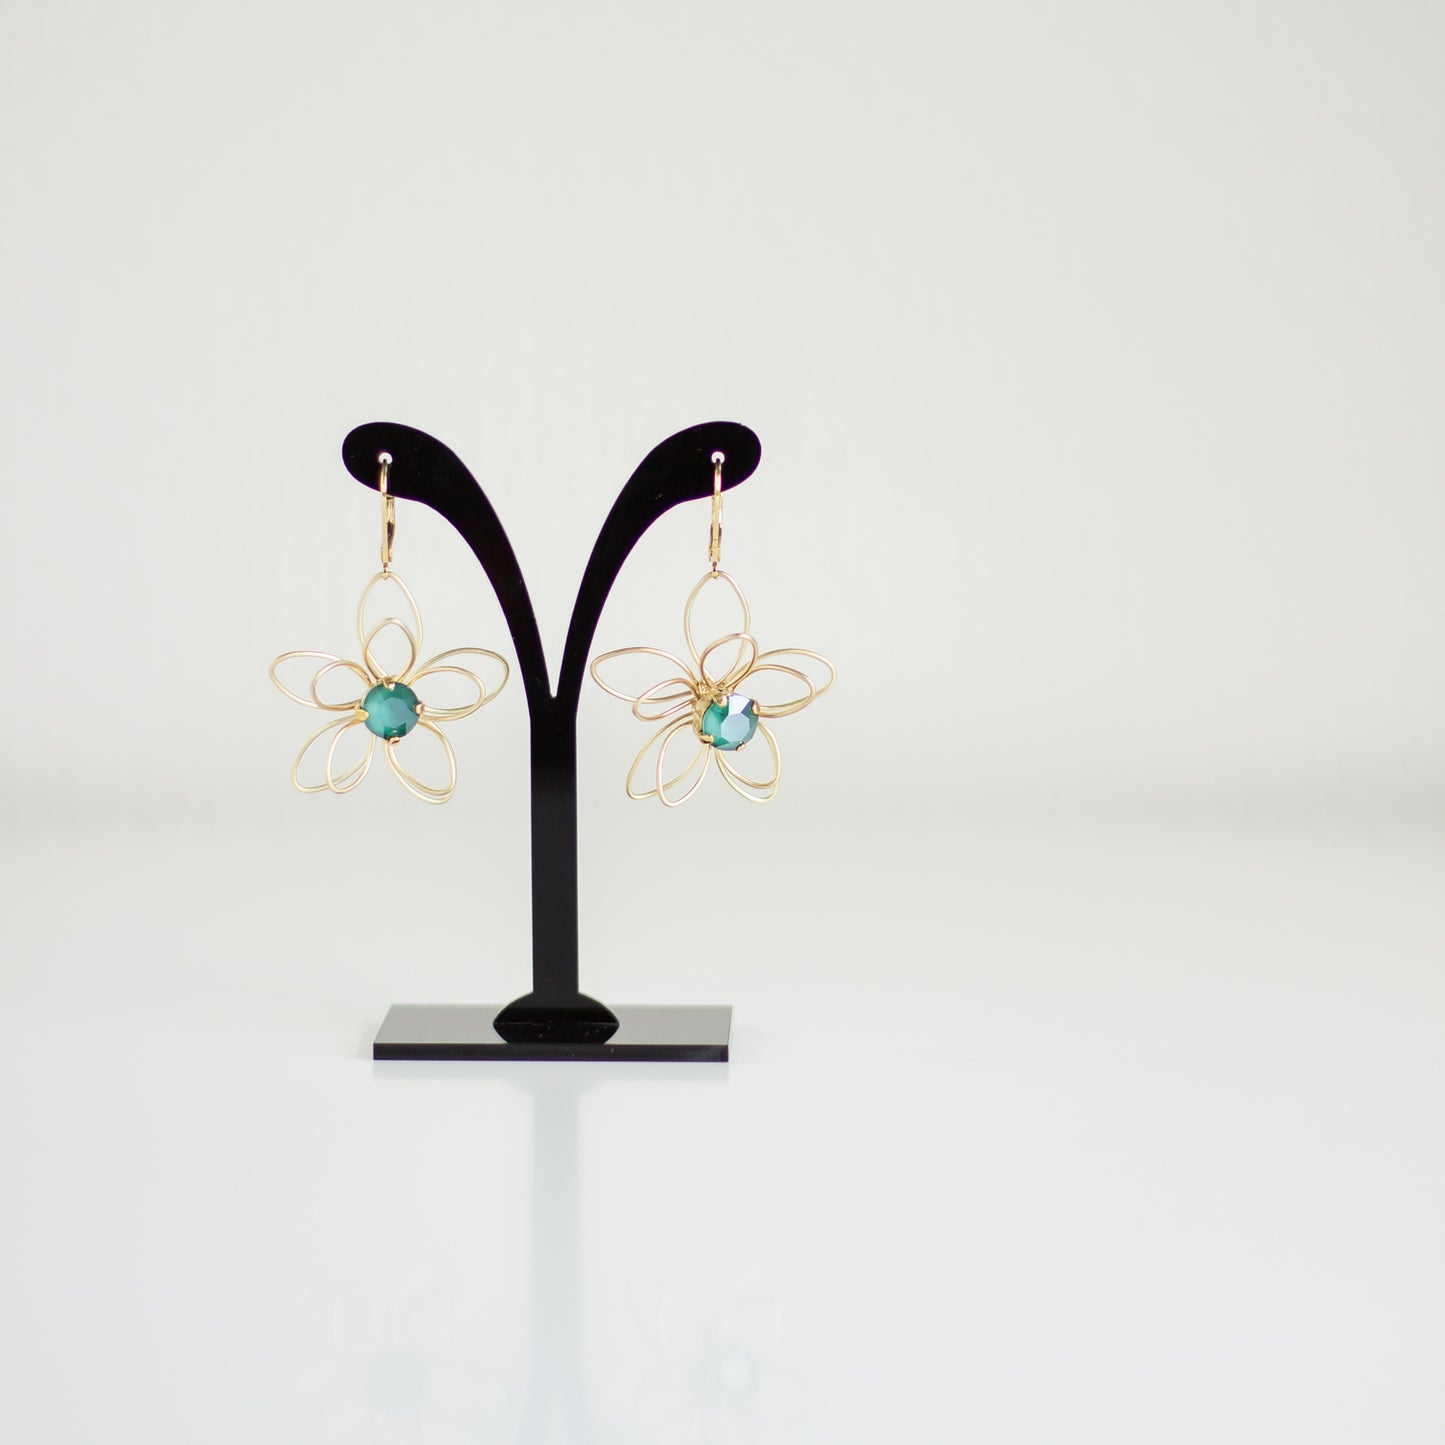 Buy online Green-Gold earrings. Flower earrings. Crystal earrings. Dangle drop earrings. Handmade Jewelry. 